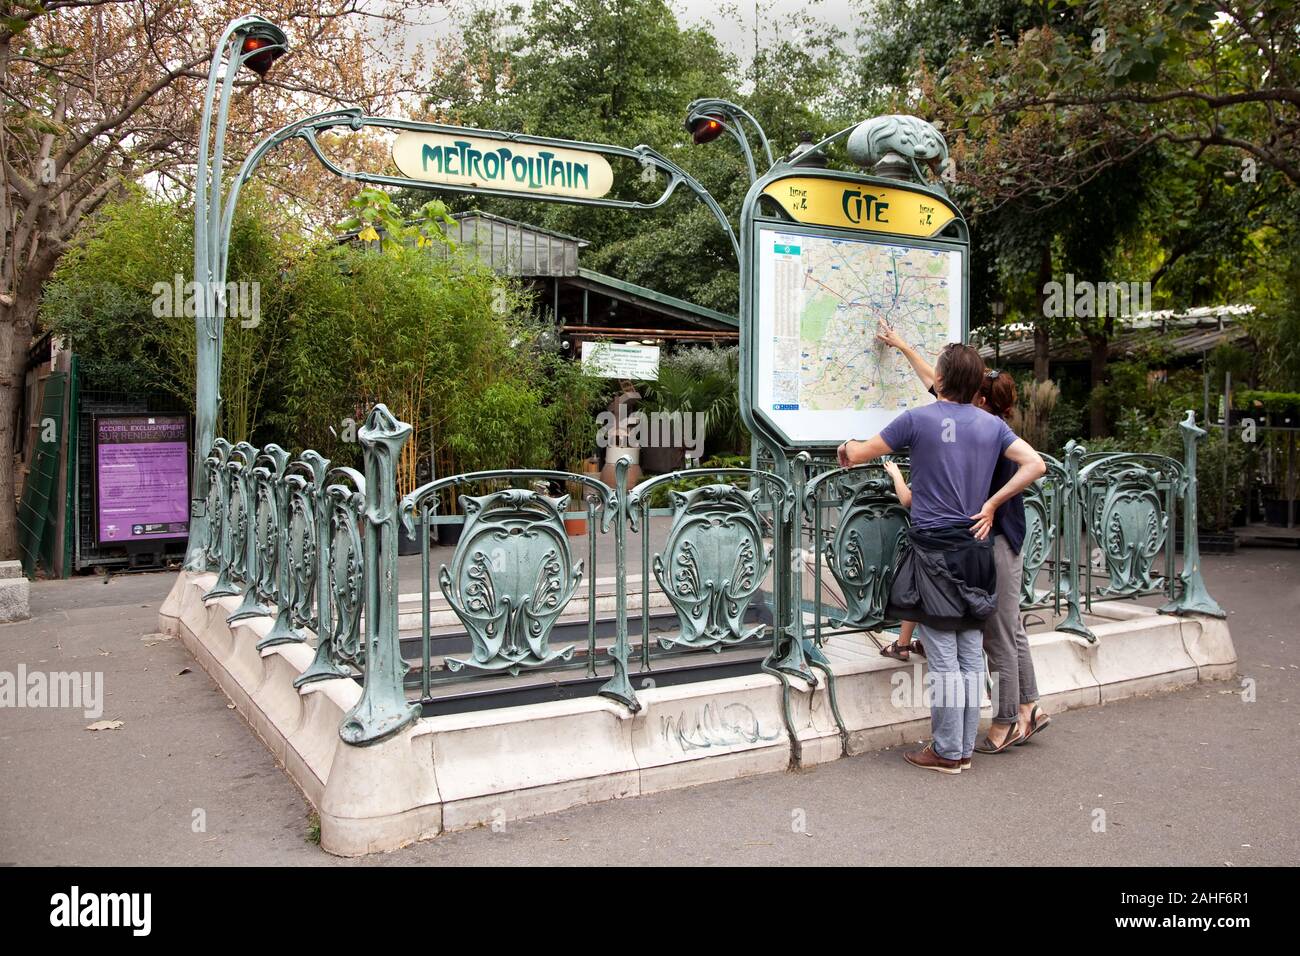 L'Art Nouveau célèbre signe pour la région métropolitaine de métro à Paris, France Banque D'Images